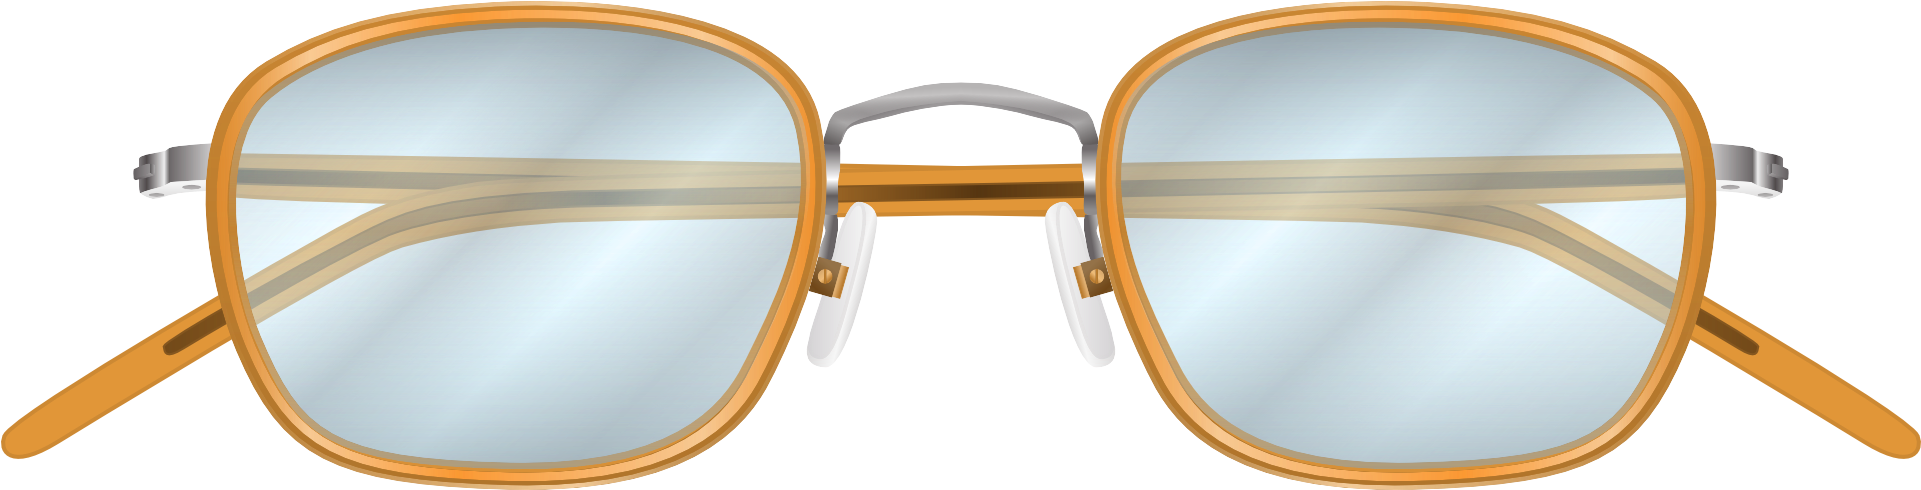 Eyeglass Vector Png Transparent Image Glasses